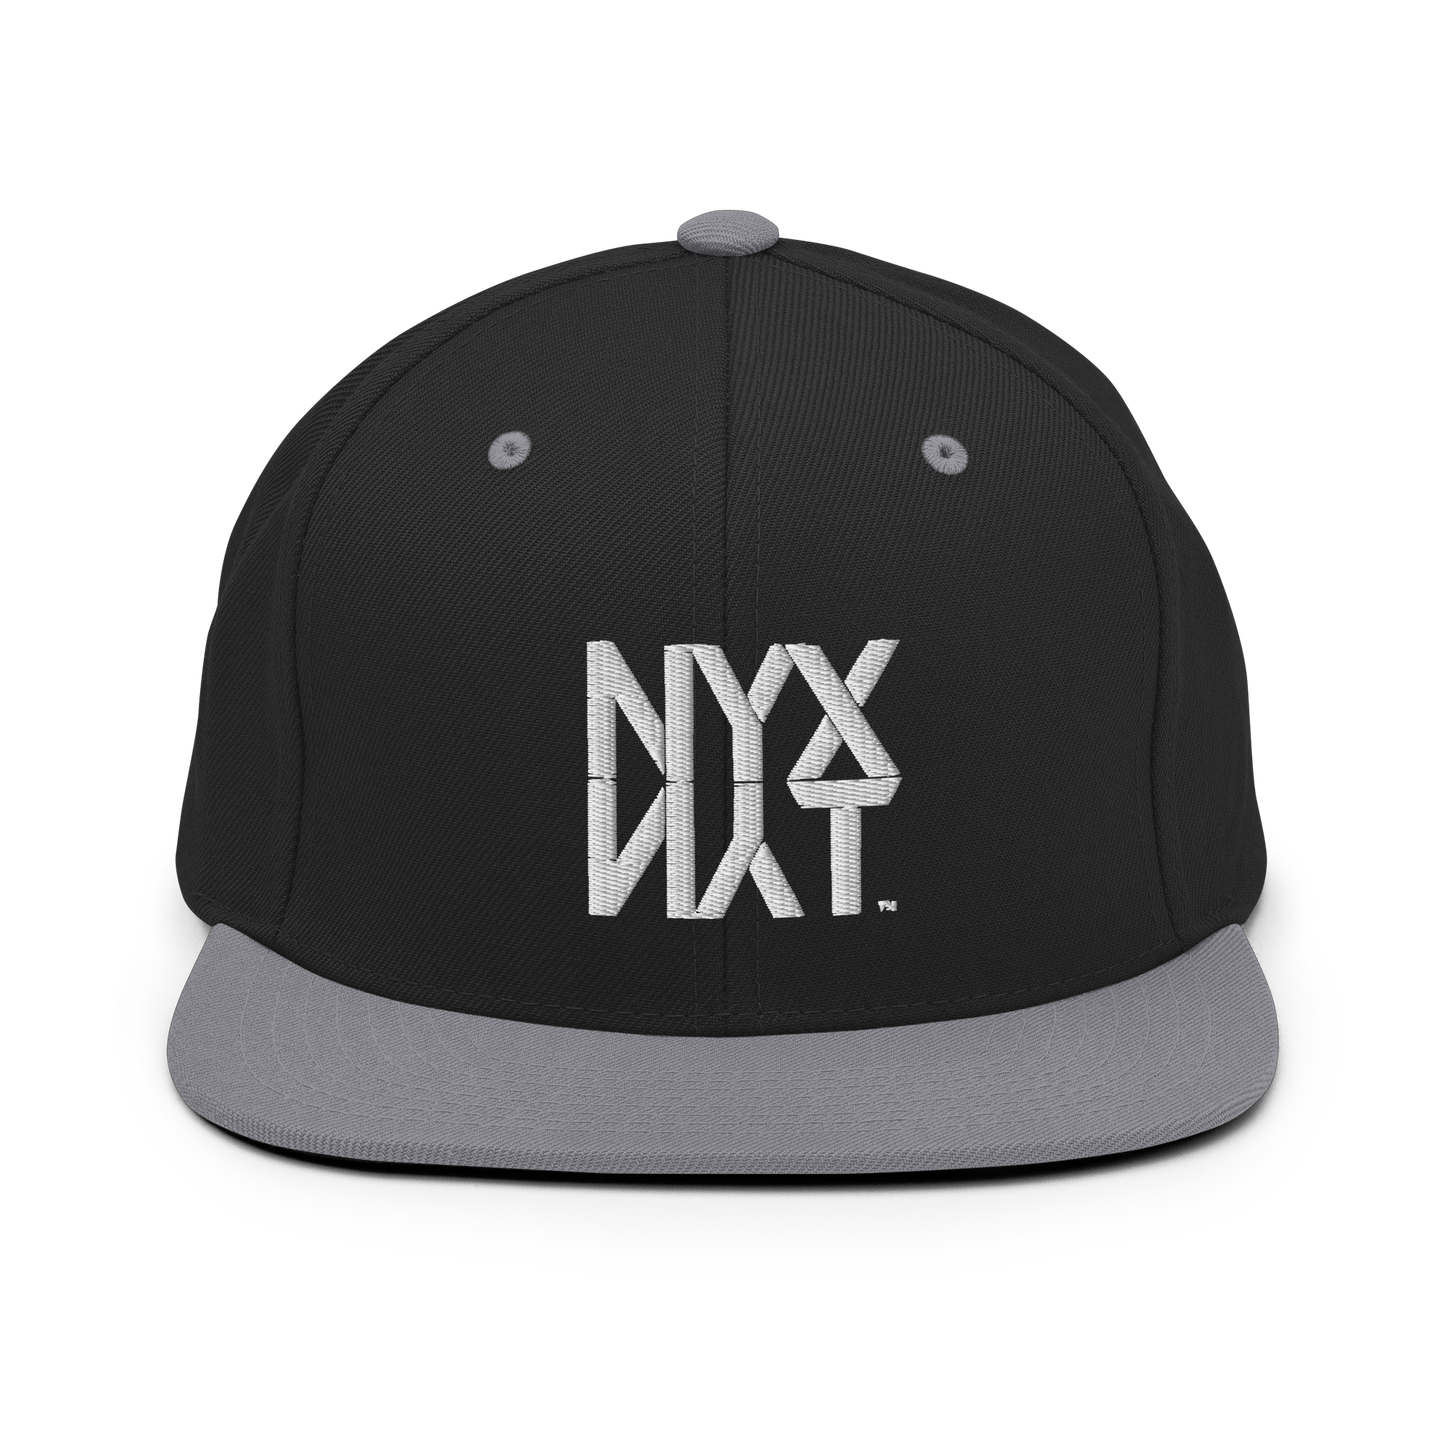 NYX NYT Classic Snapback Hat